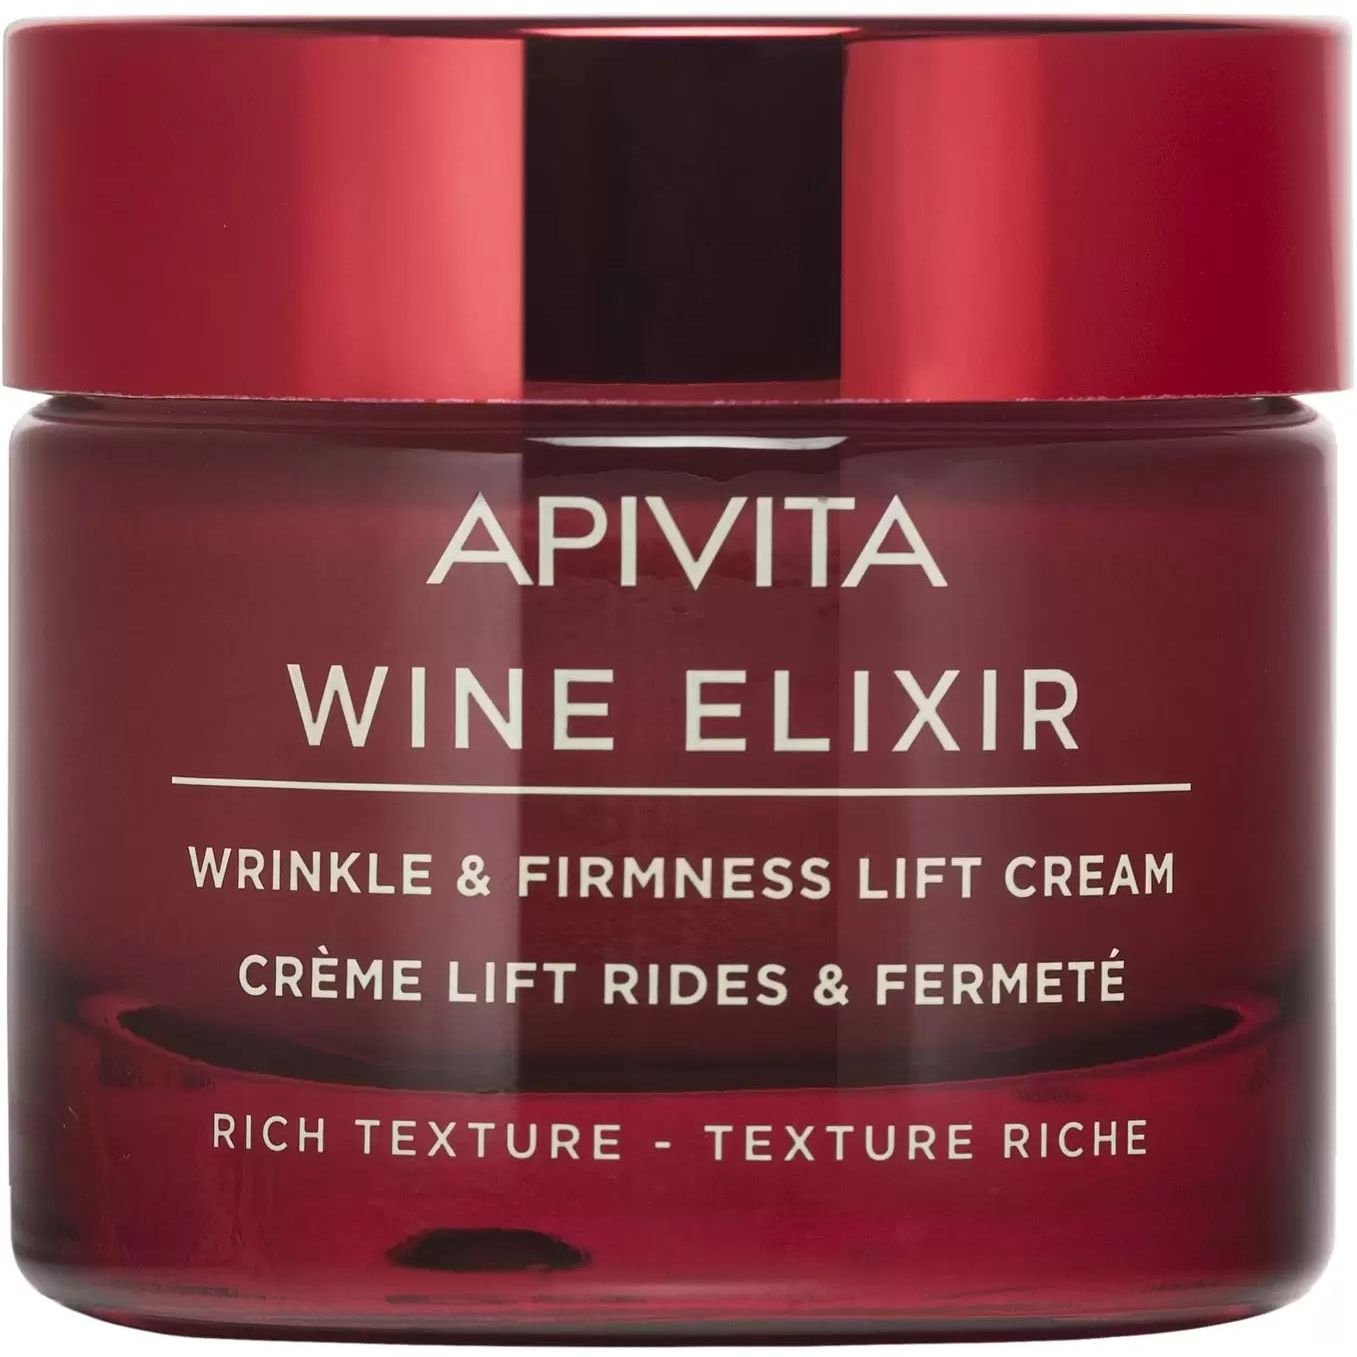 Крем-ліфтинг насиченої текстури Apivita Wine Elixir для боротьби зі зморшками та підвищення пружності, 50 мл - фото 1